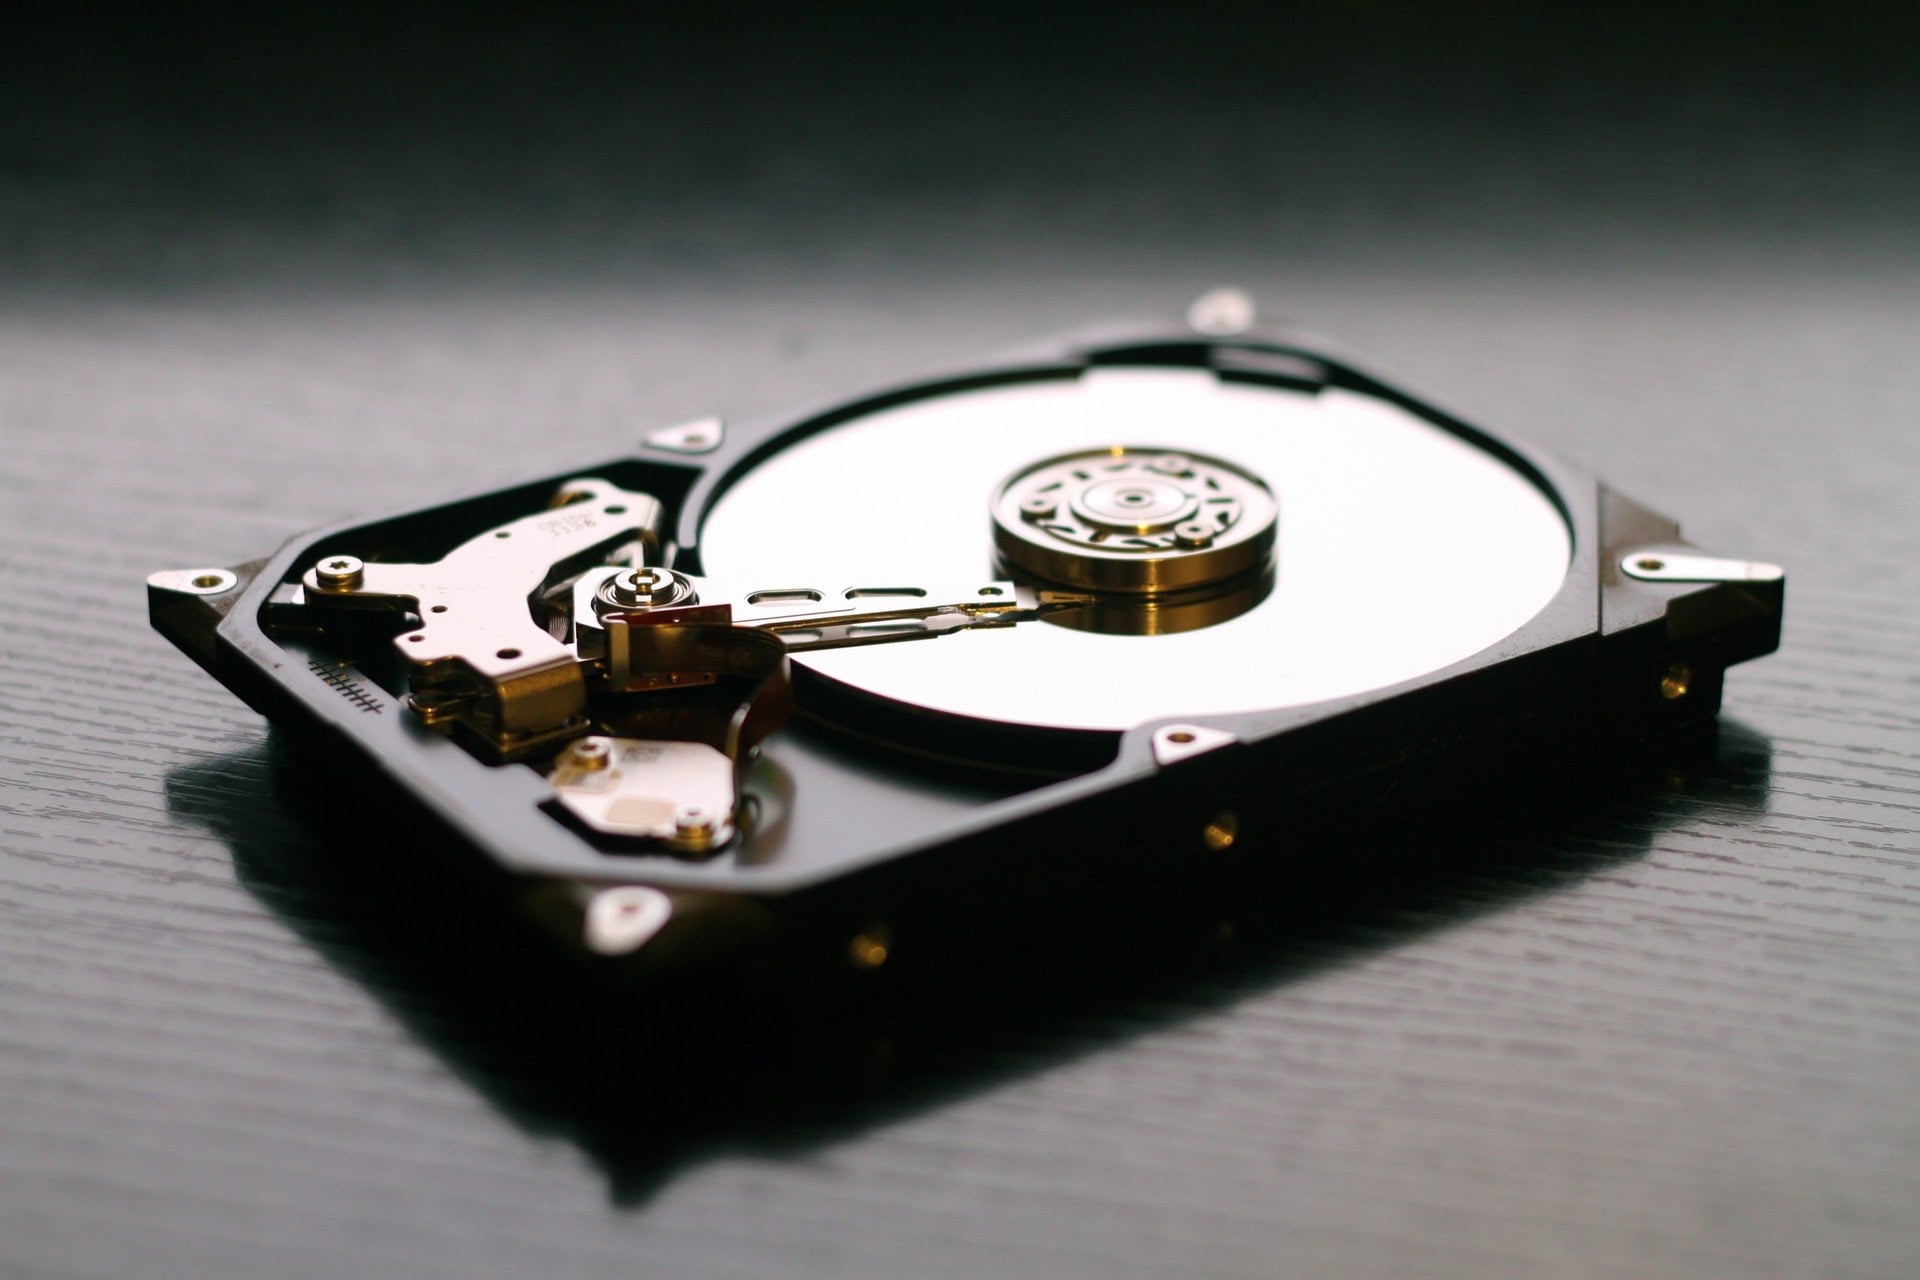 希捷 Seagate 硬碟異常障礙：送國外原廠維修、良品更新紀錄